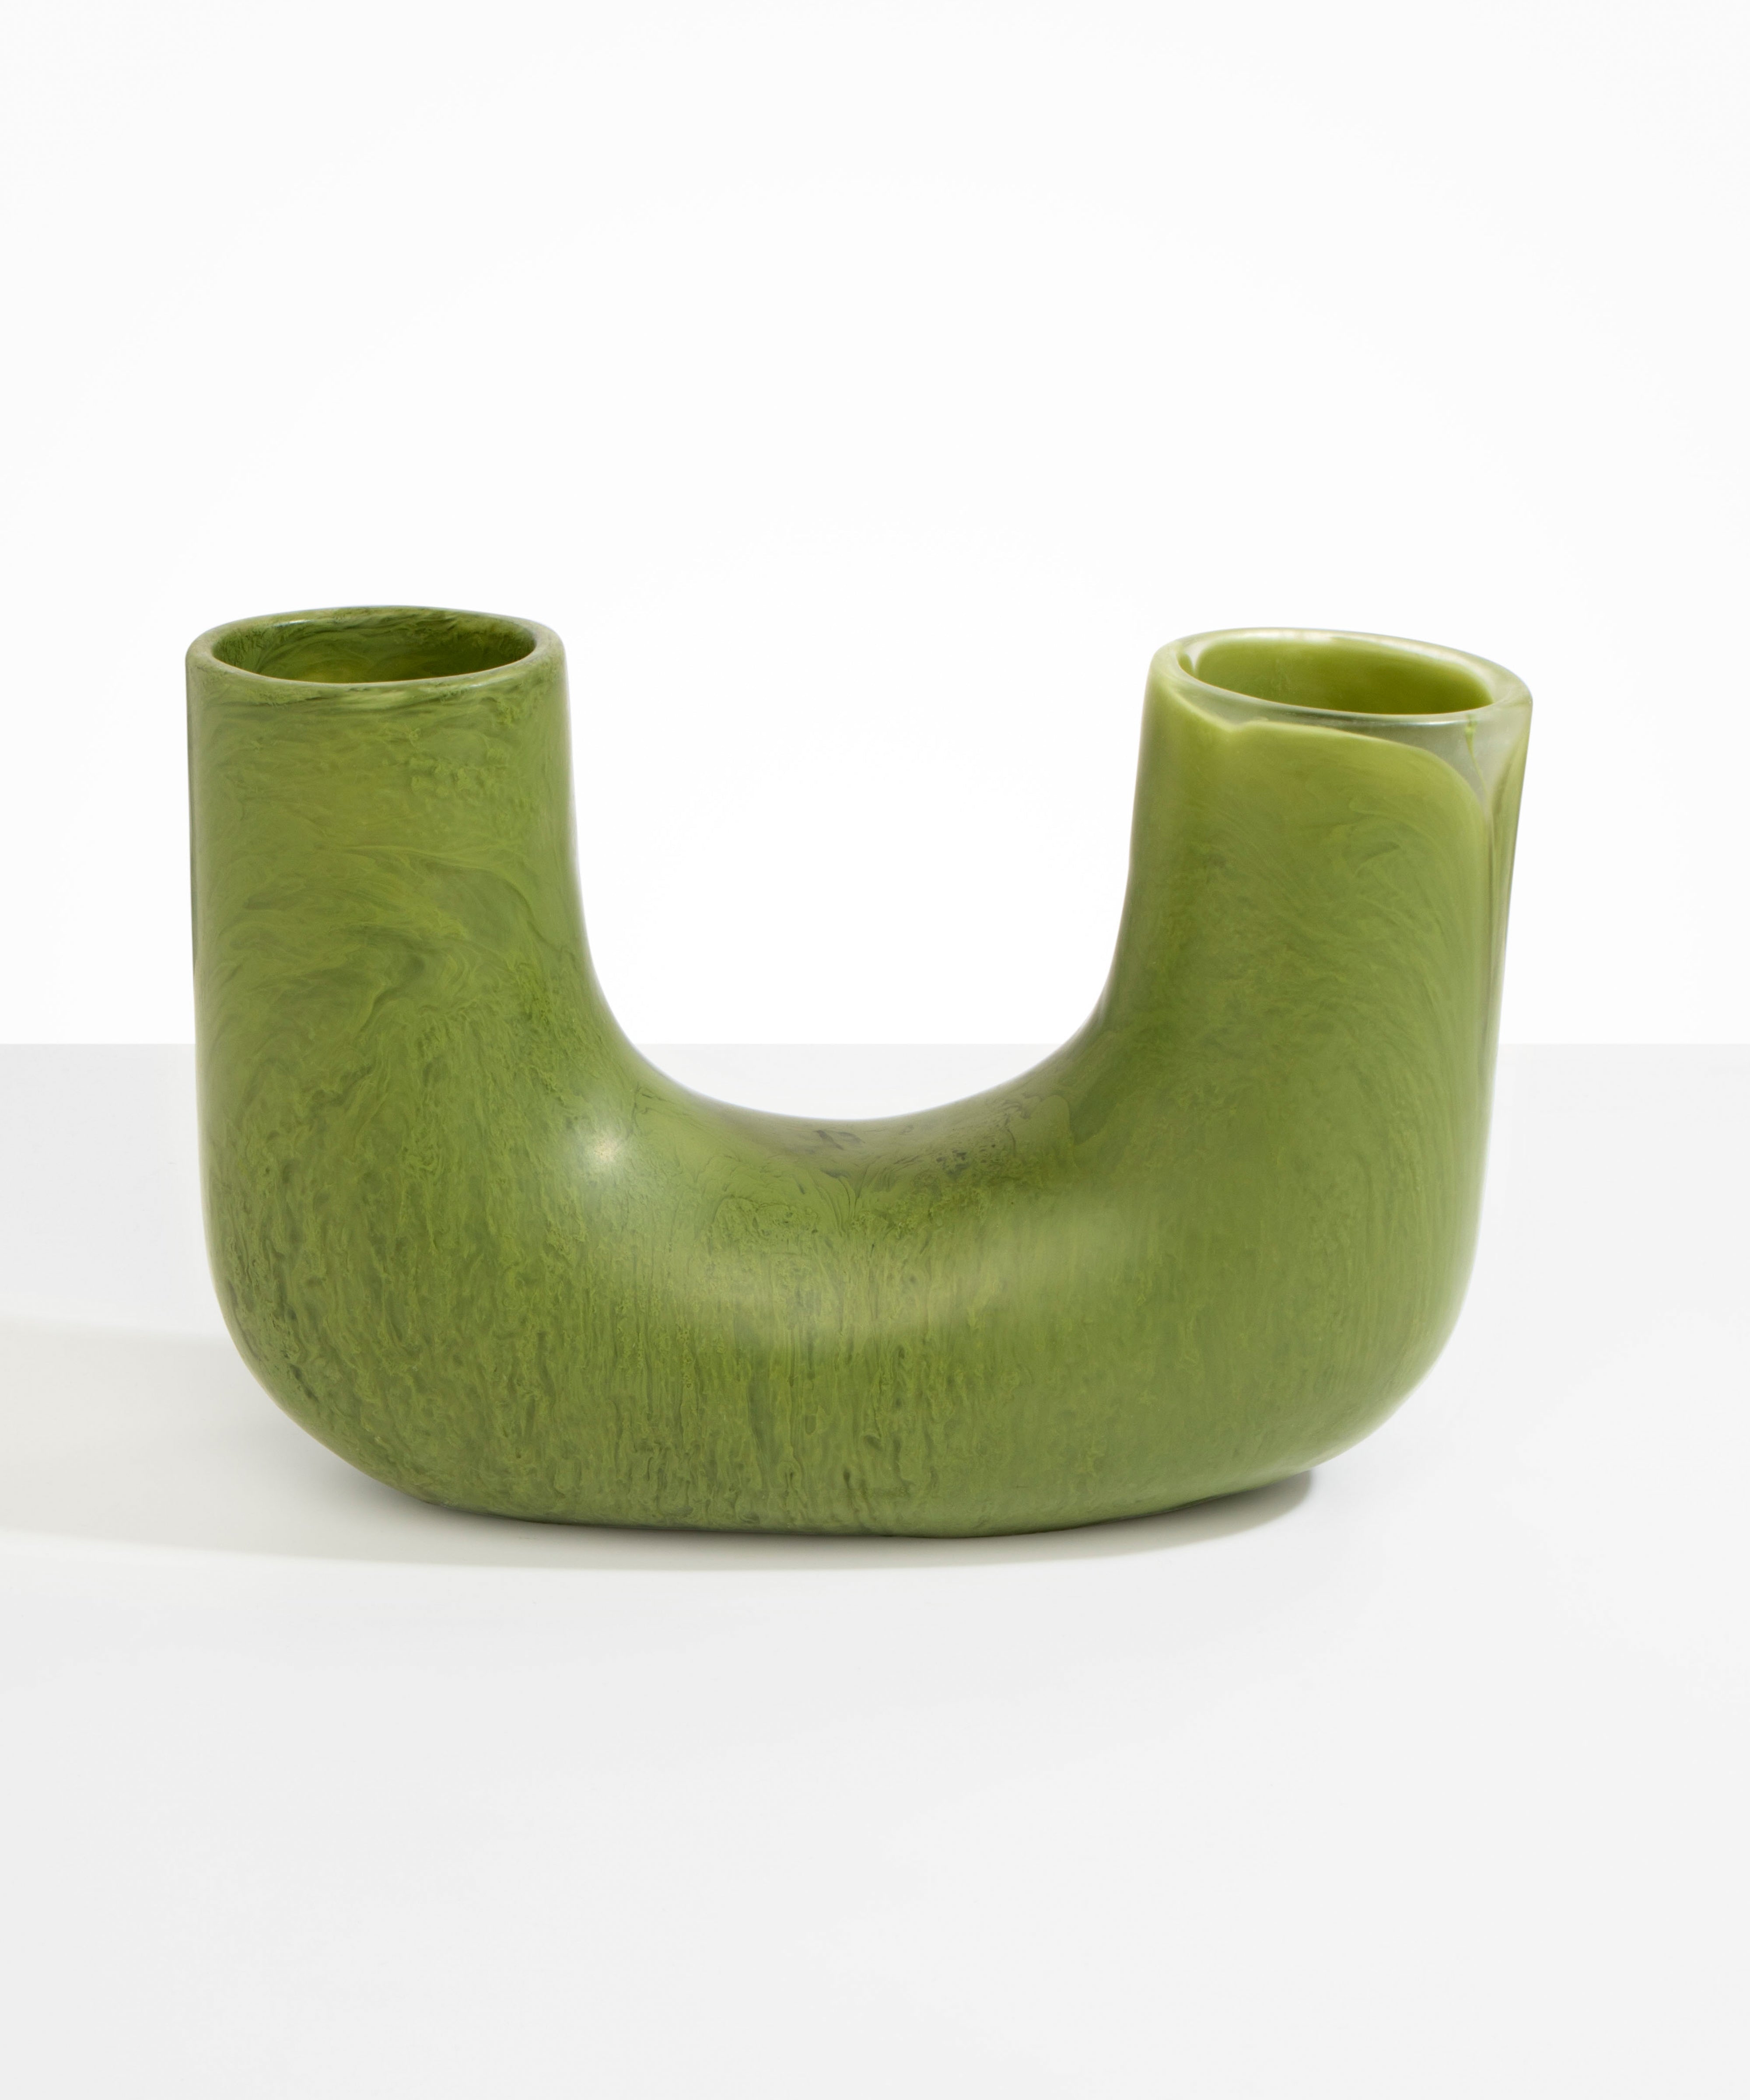 Dinosaur Designs Large Branch Vase Vases in Olive color resin